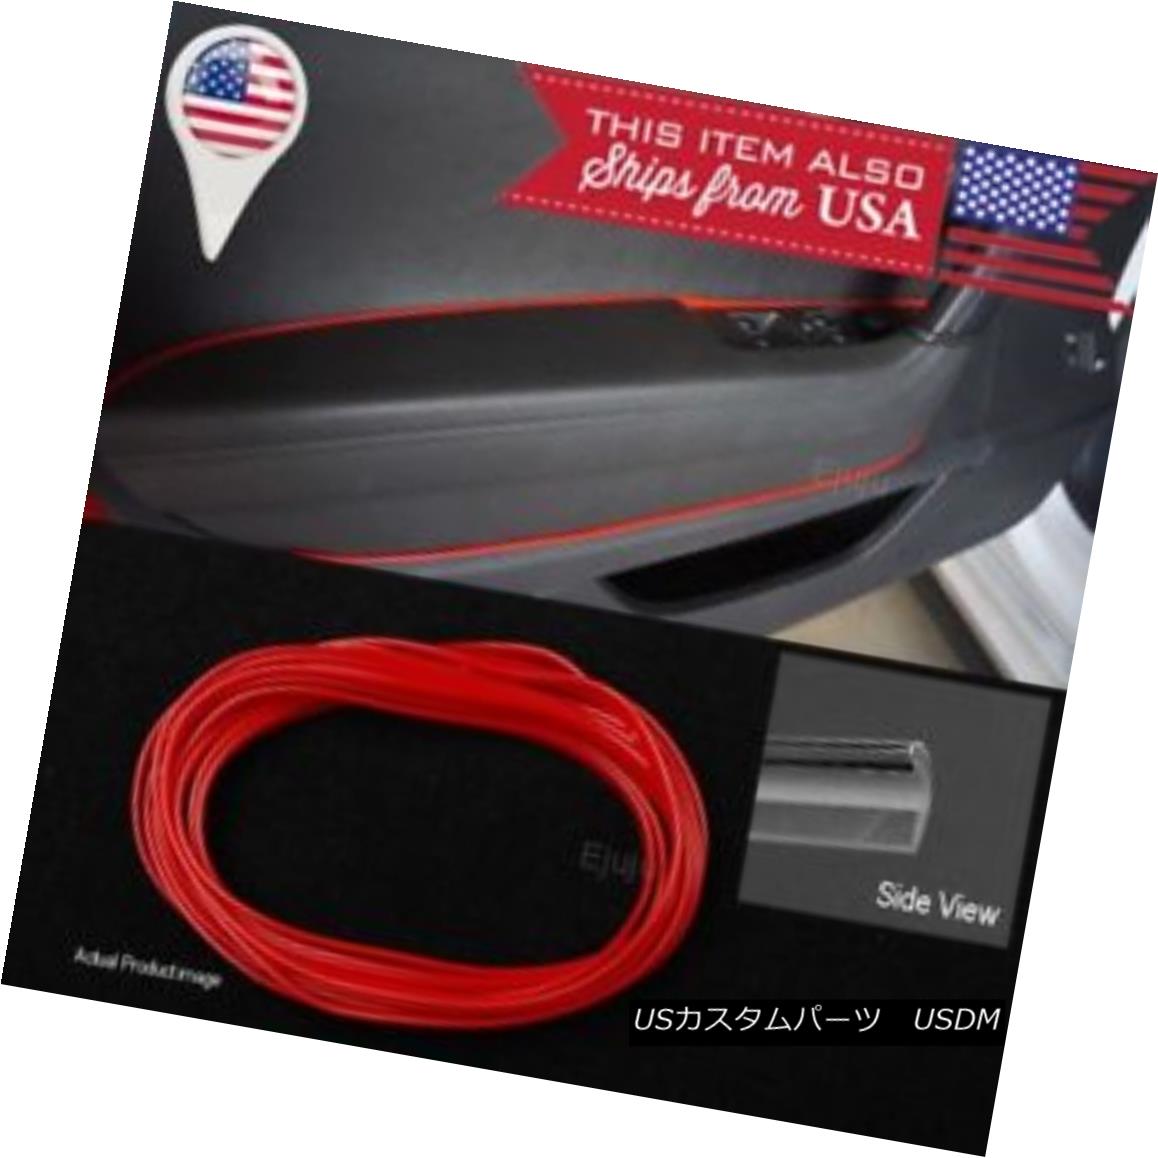 エアロパーツ 16FT Red Stripe Trim Line Insert For Mazda Subaru Console Dashboard Door Panel マツダスバルコンソールダッシュボードドアパネル用16FT赤いストライプトリムラインインサート